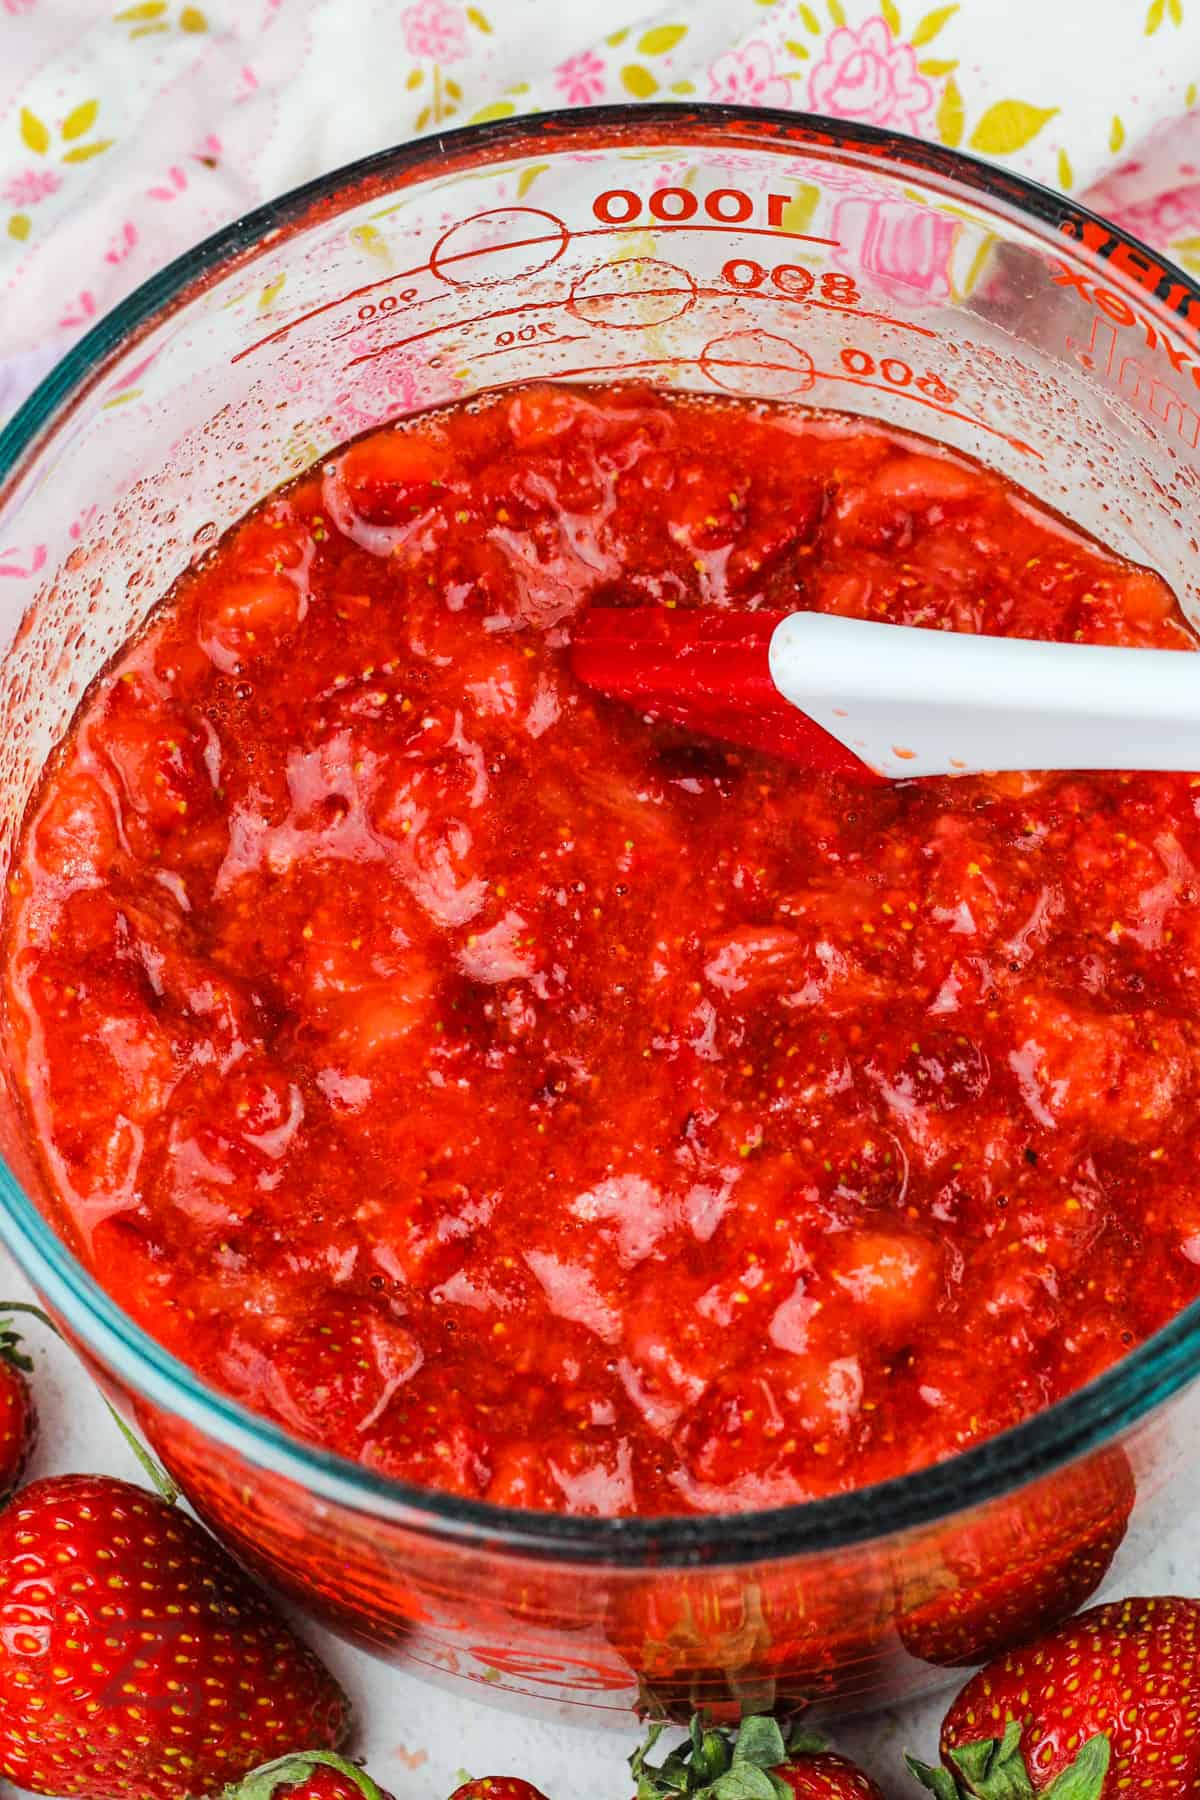 mixing Sugar Free Strawberry Freezer Jam ingredients